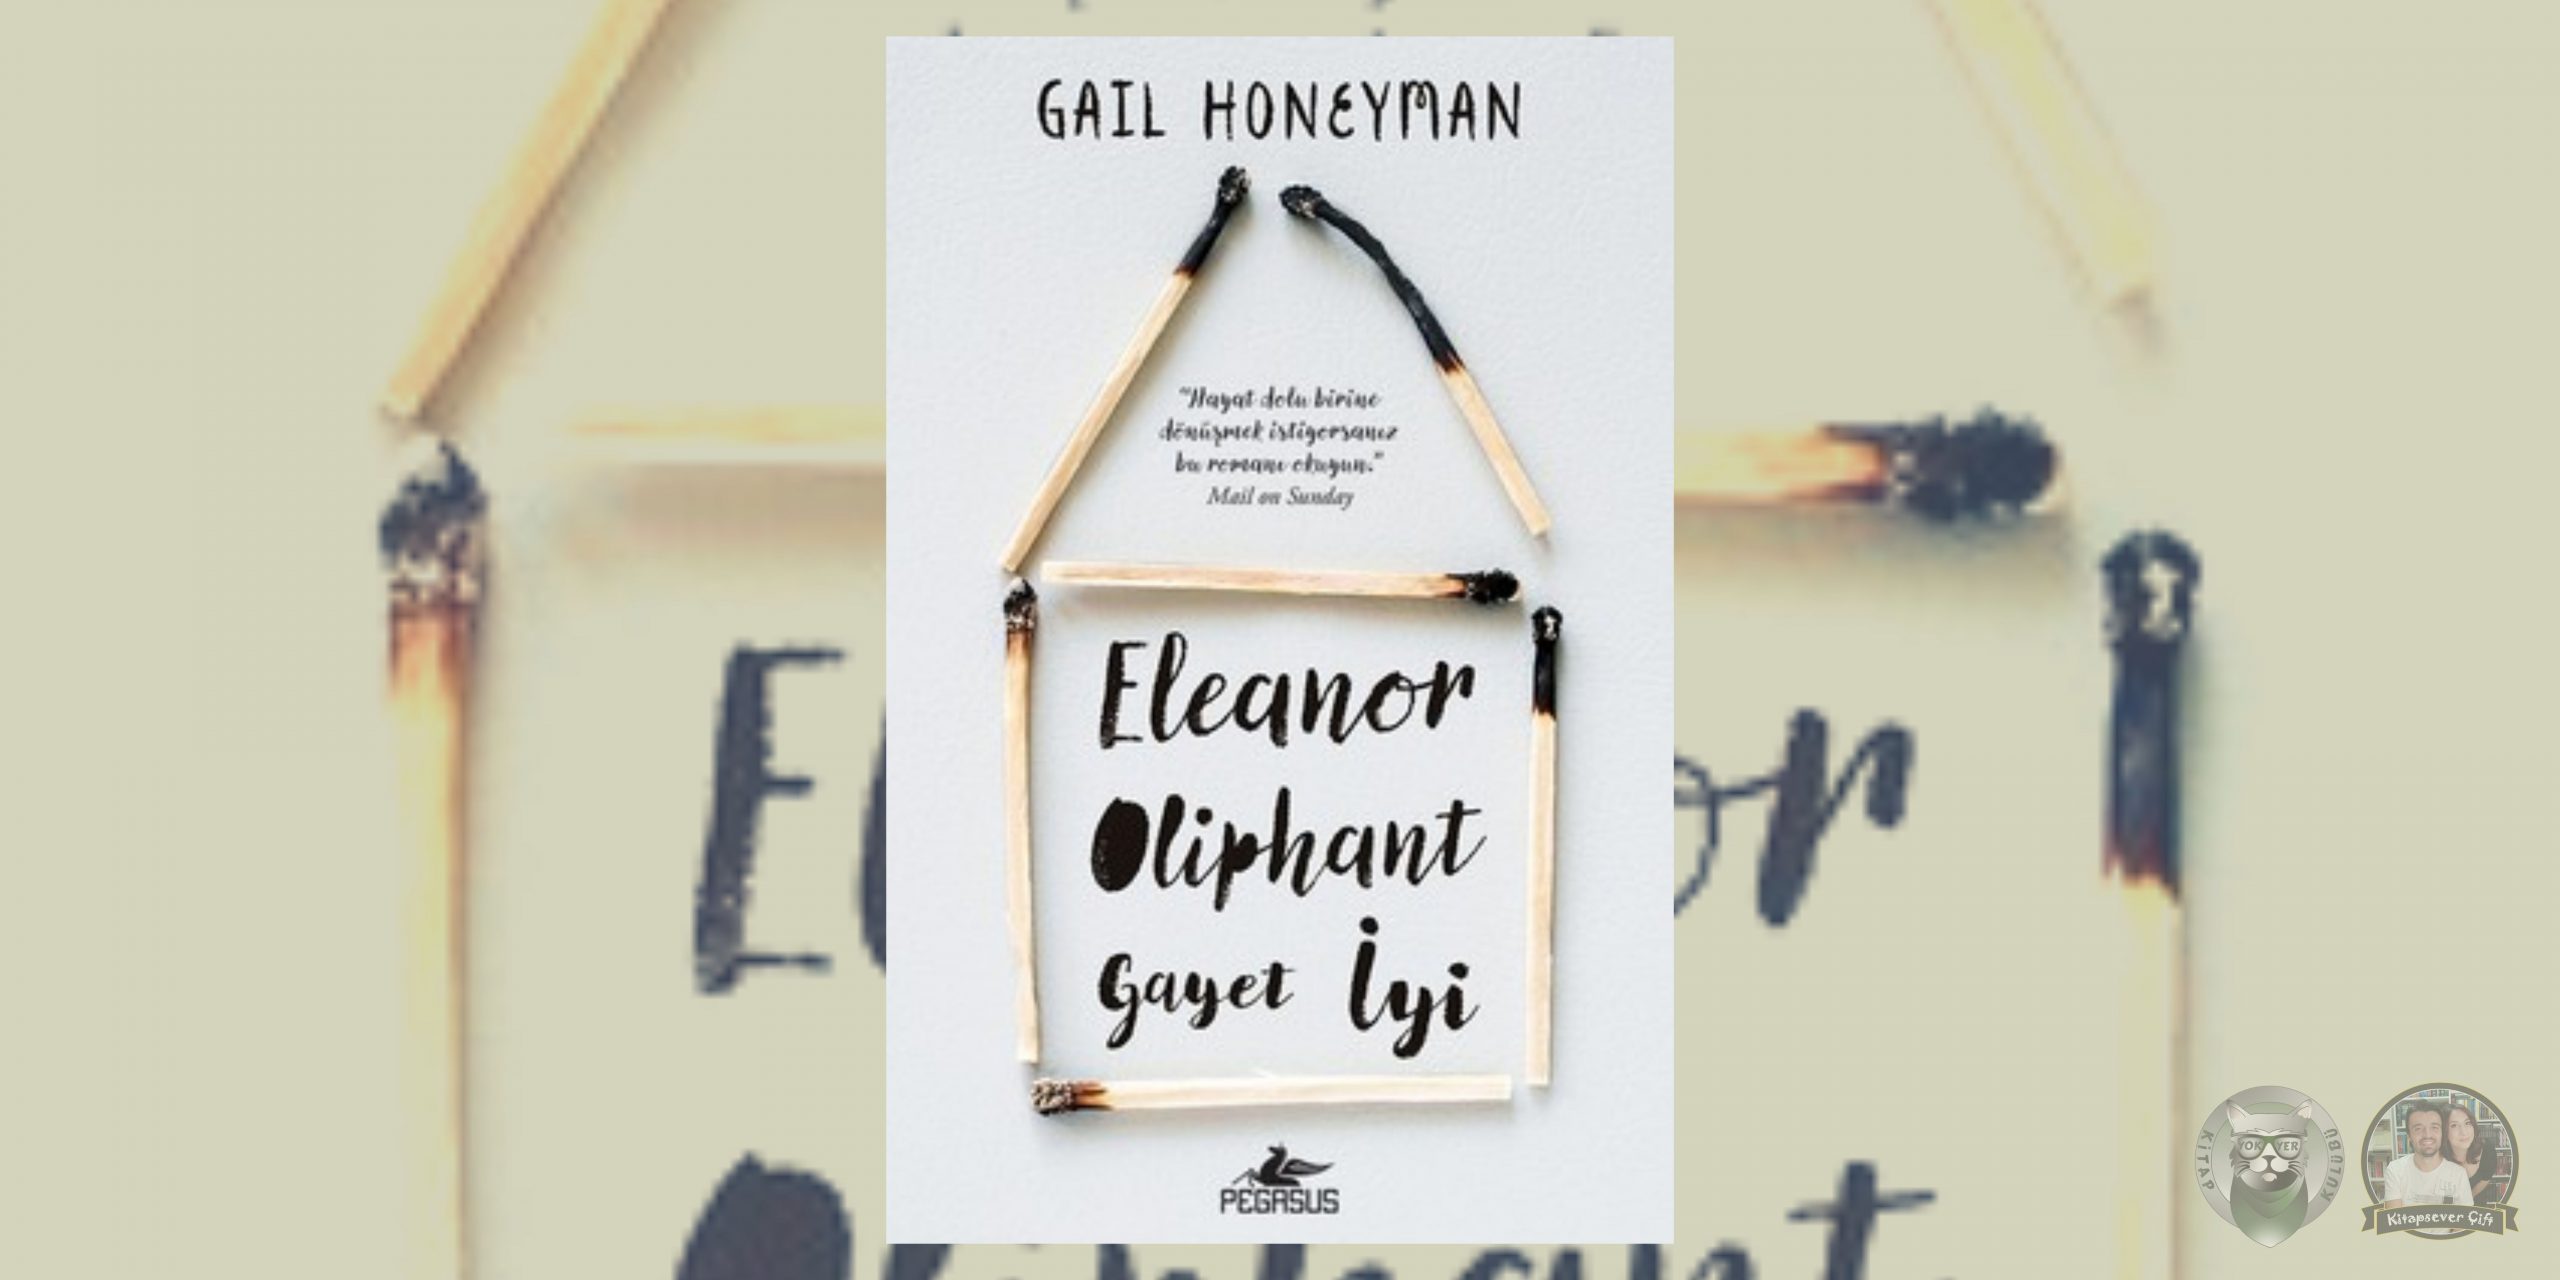 sessiz kalma! hayranlarına 13 kitap önerisi 8 – eleanor oliphant gayet iyi scaled